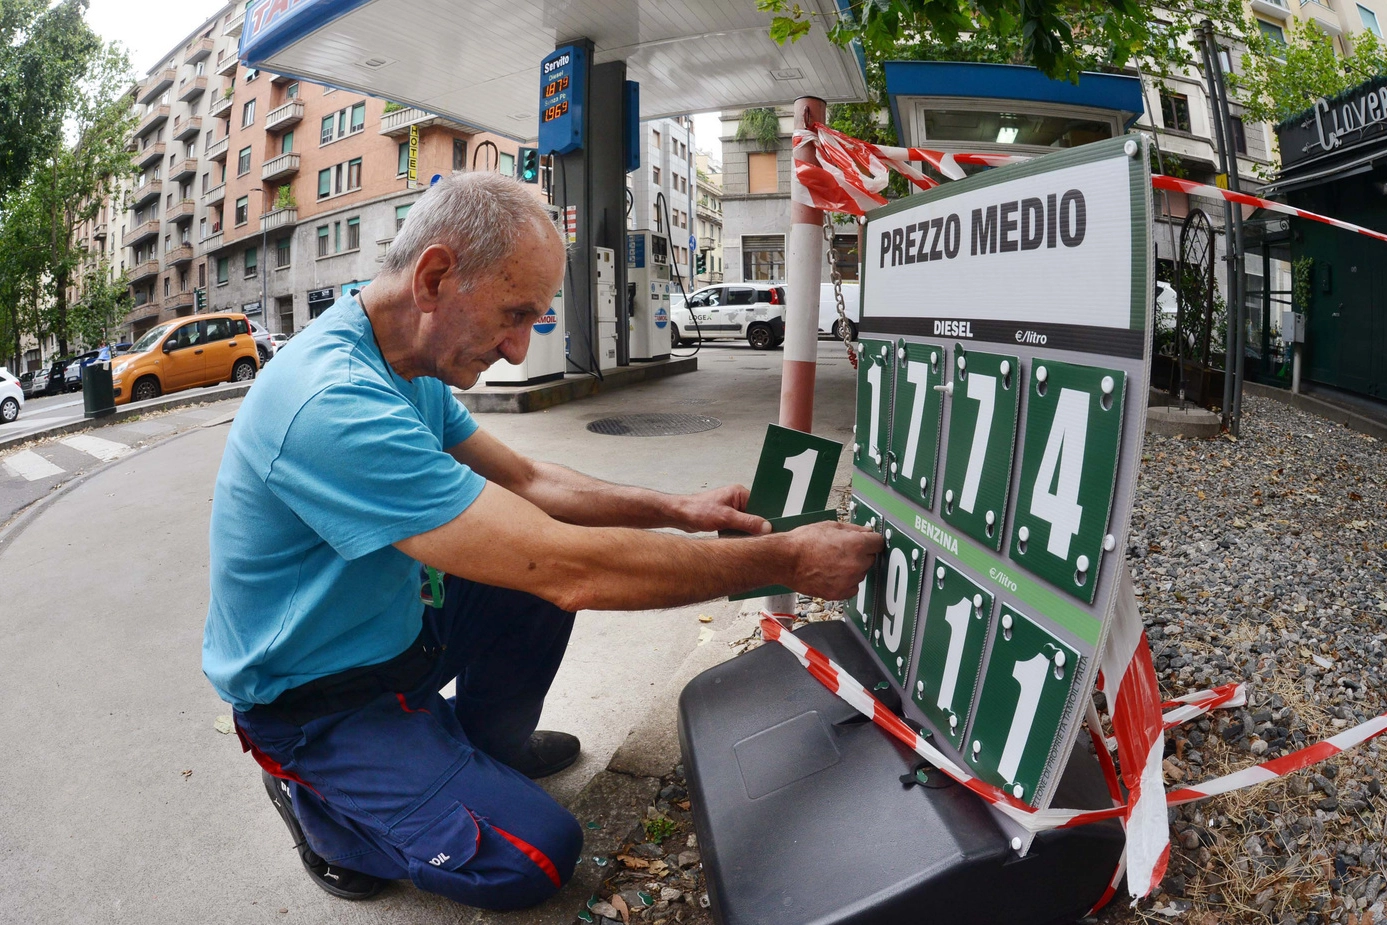 Un benzinaio aggiorna la cartellonistica che indica i prezzi medi regionali di benzina e gasolio